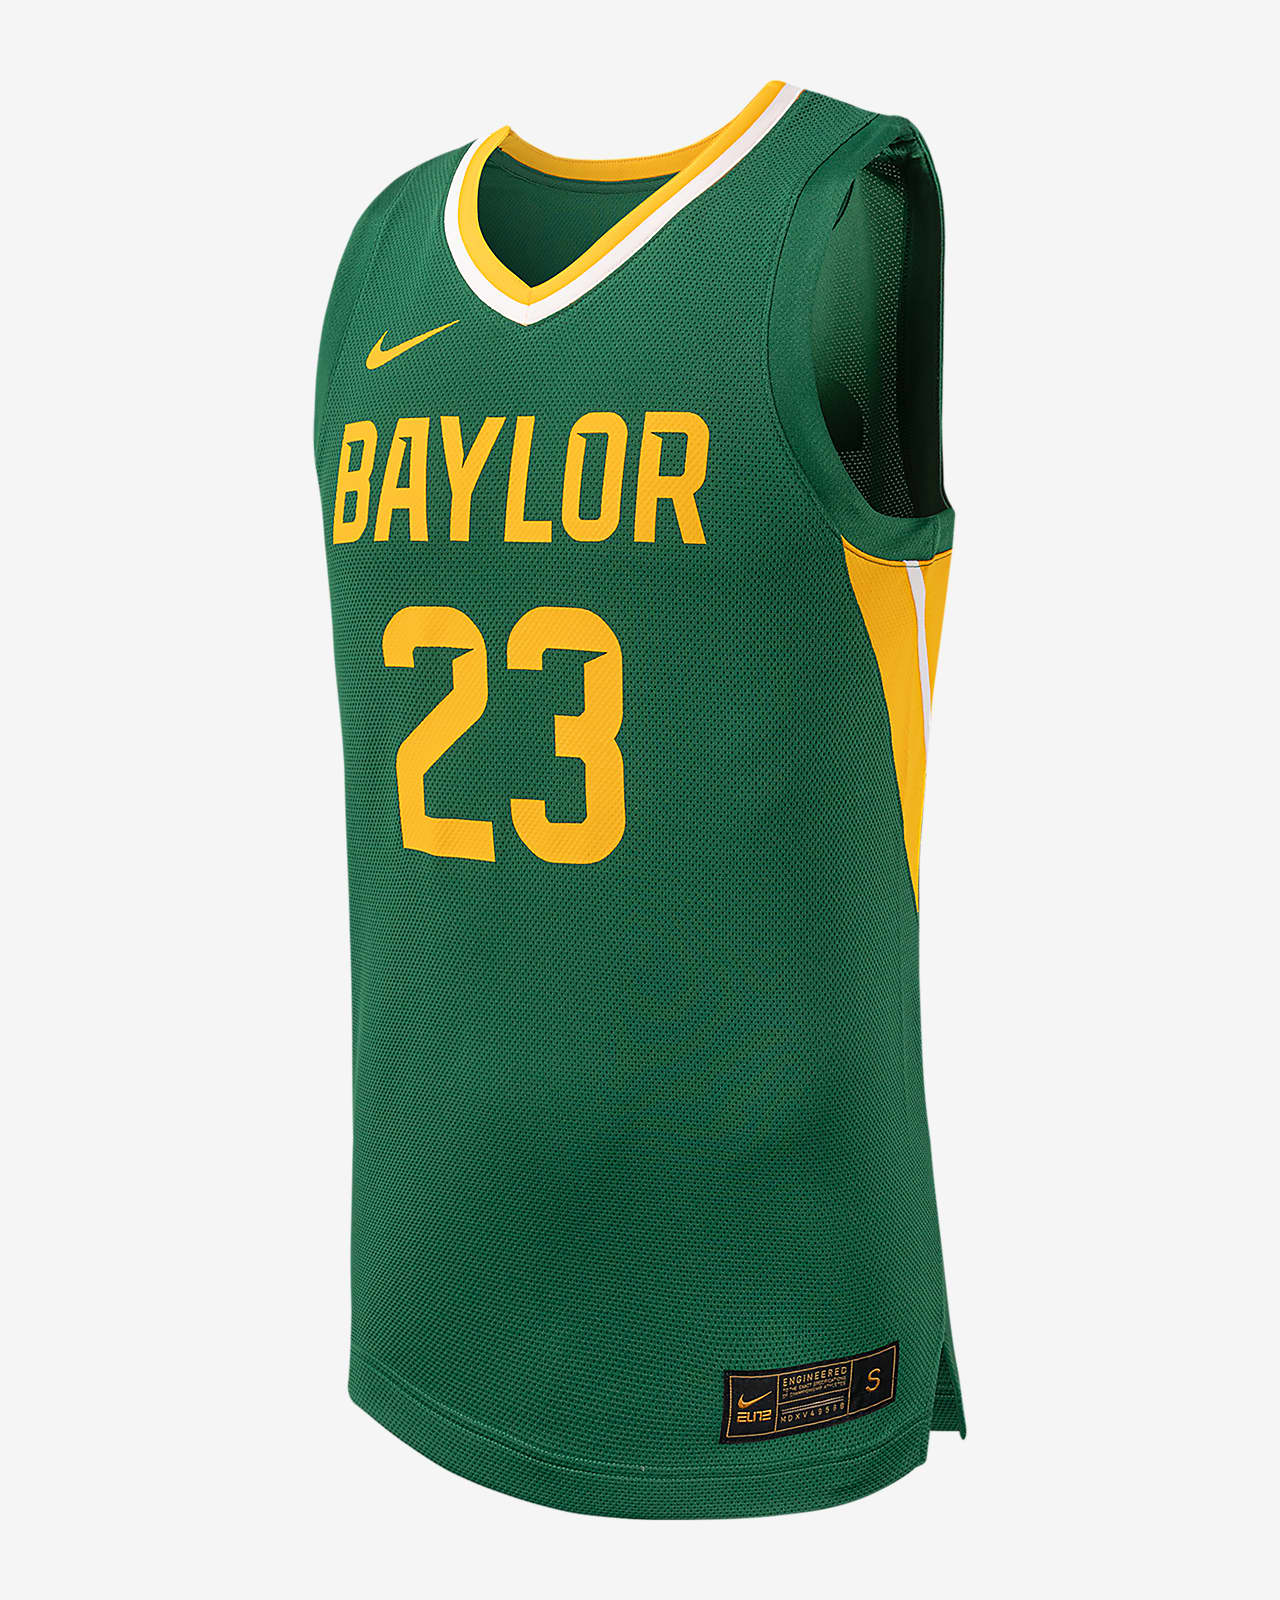 Jersey de básquetbol universitario Nike Replica para hombre Baylor